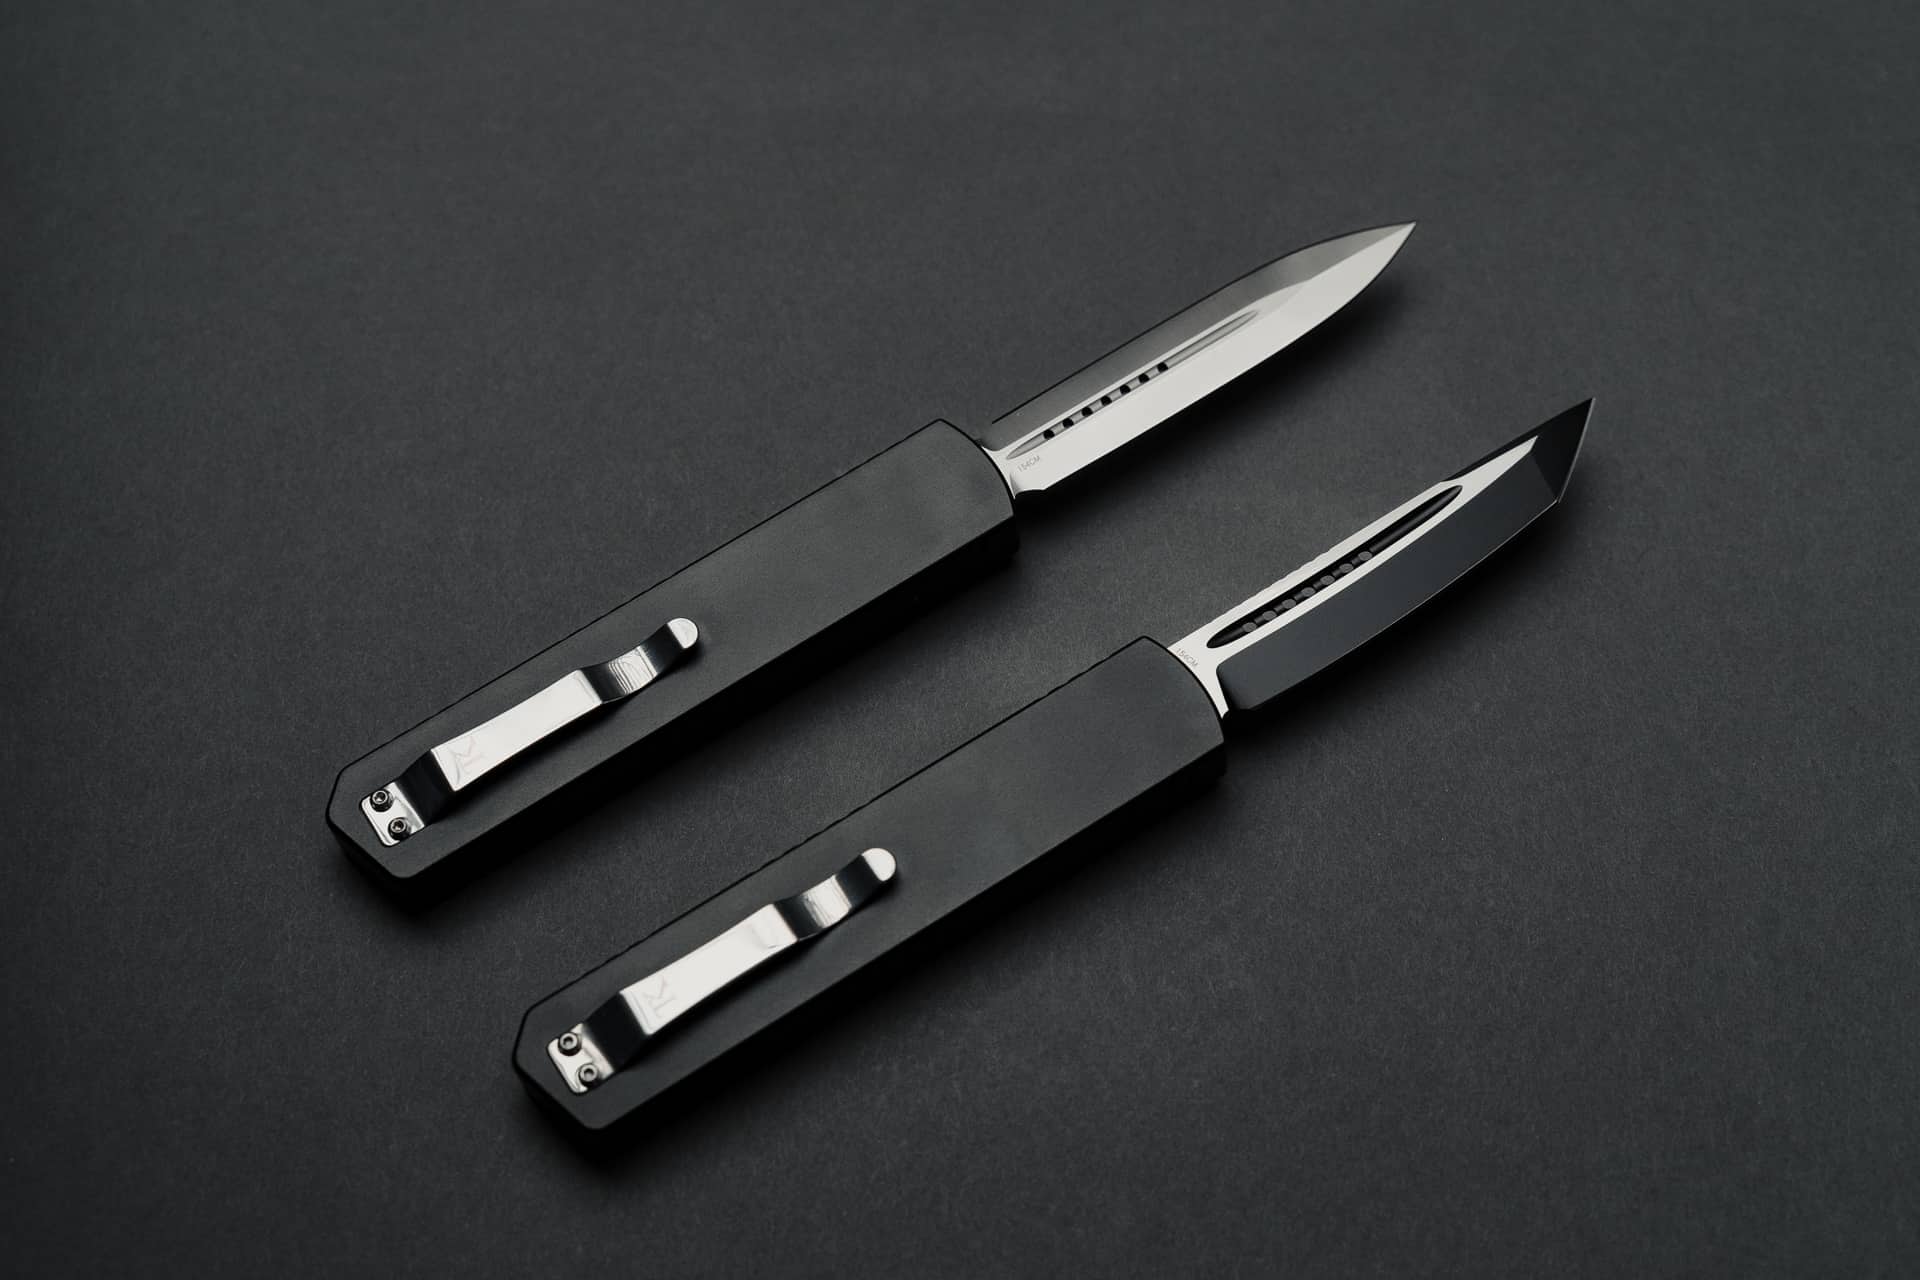 Automatic Black Market OTF Knife